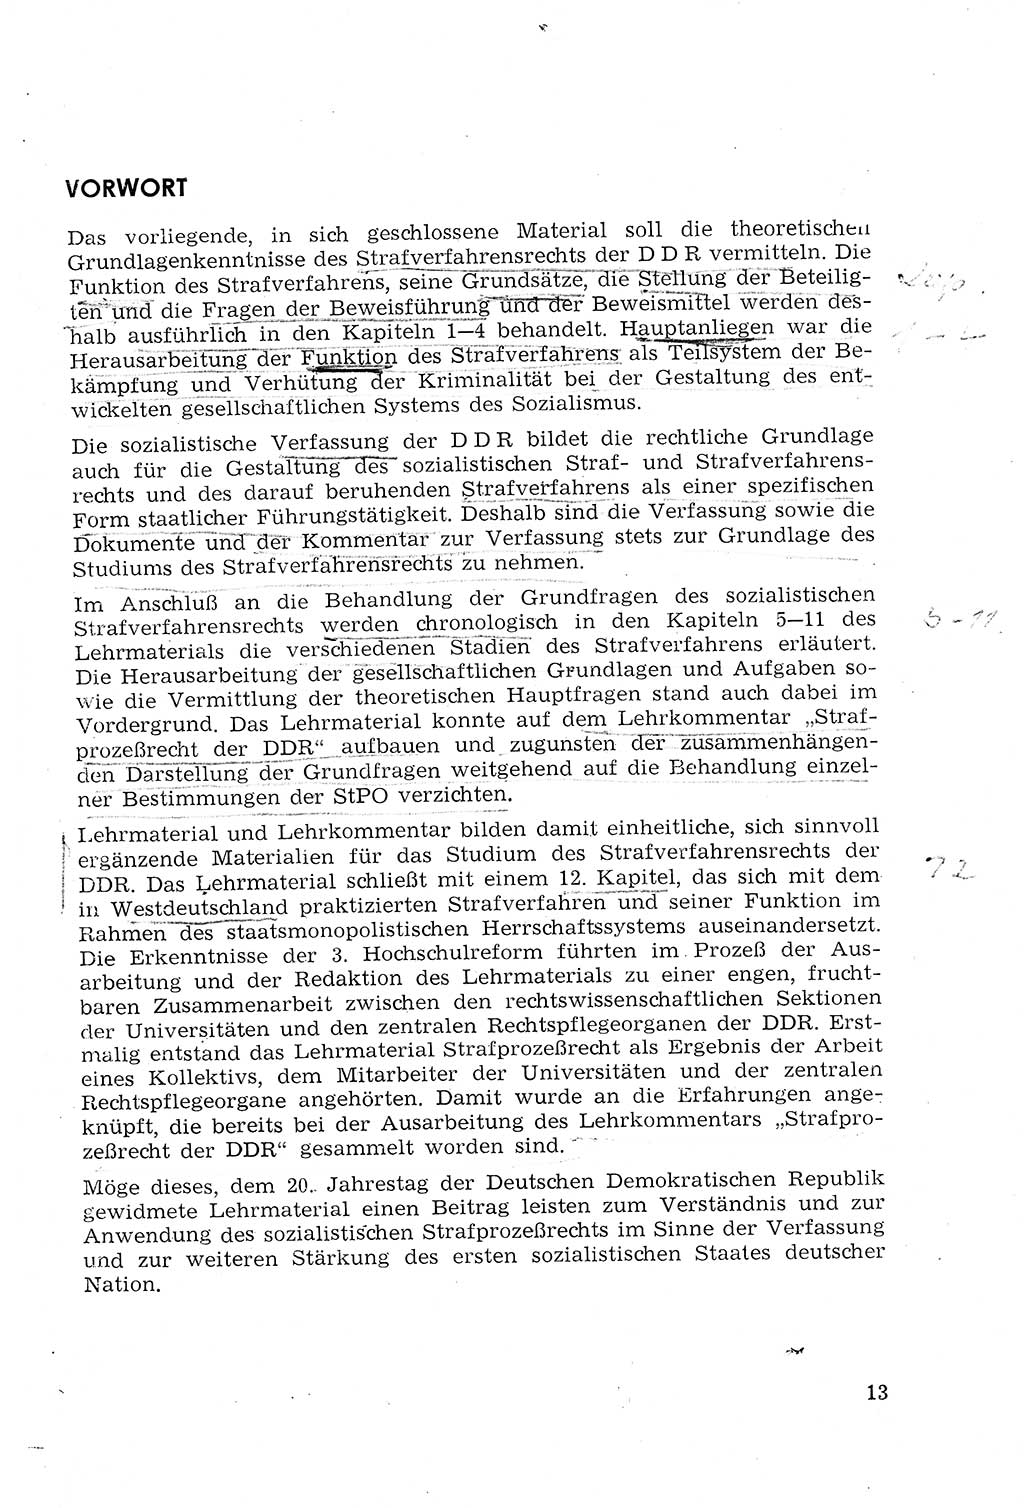 Strafprozeßrecht der DDR (Deutsche Demokratische Republik), Lehrmaterial 1969, Seite 13 (Strafprozeßr. DDR Lehrmat. 1969, S. 13)